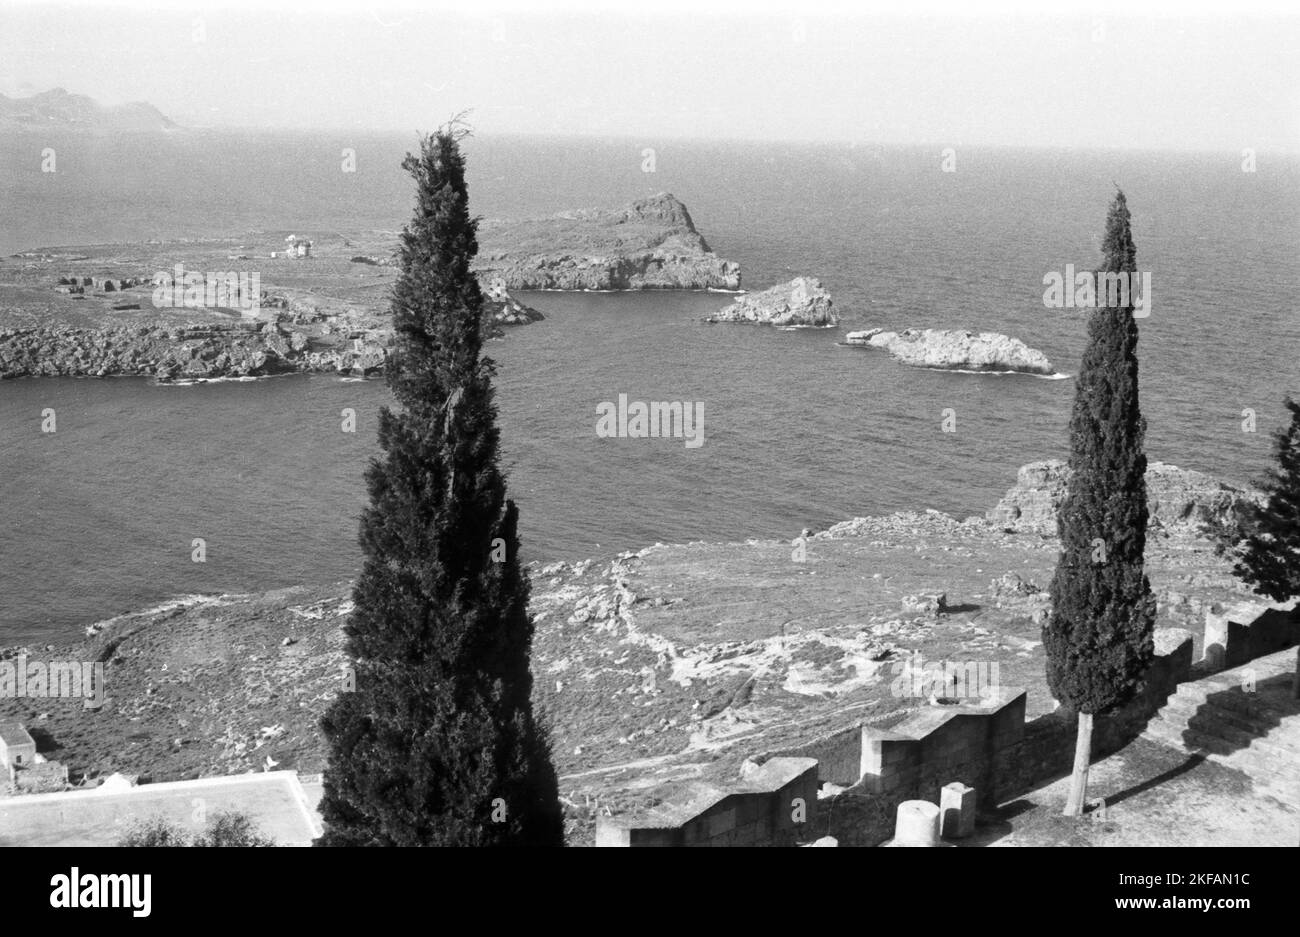 Blick von der Tempelanlage von Ialyssos auf Rhodos aufs Meer, Griechenland, 1950er Jahre. View from the temples of Ialyssos on Rhodos to the sea, Greece, 1950s. Stock Photo